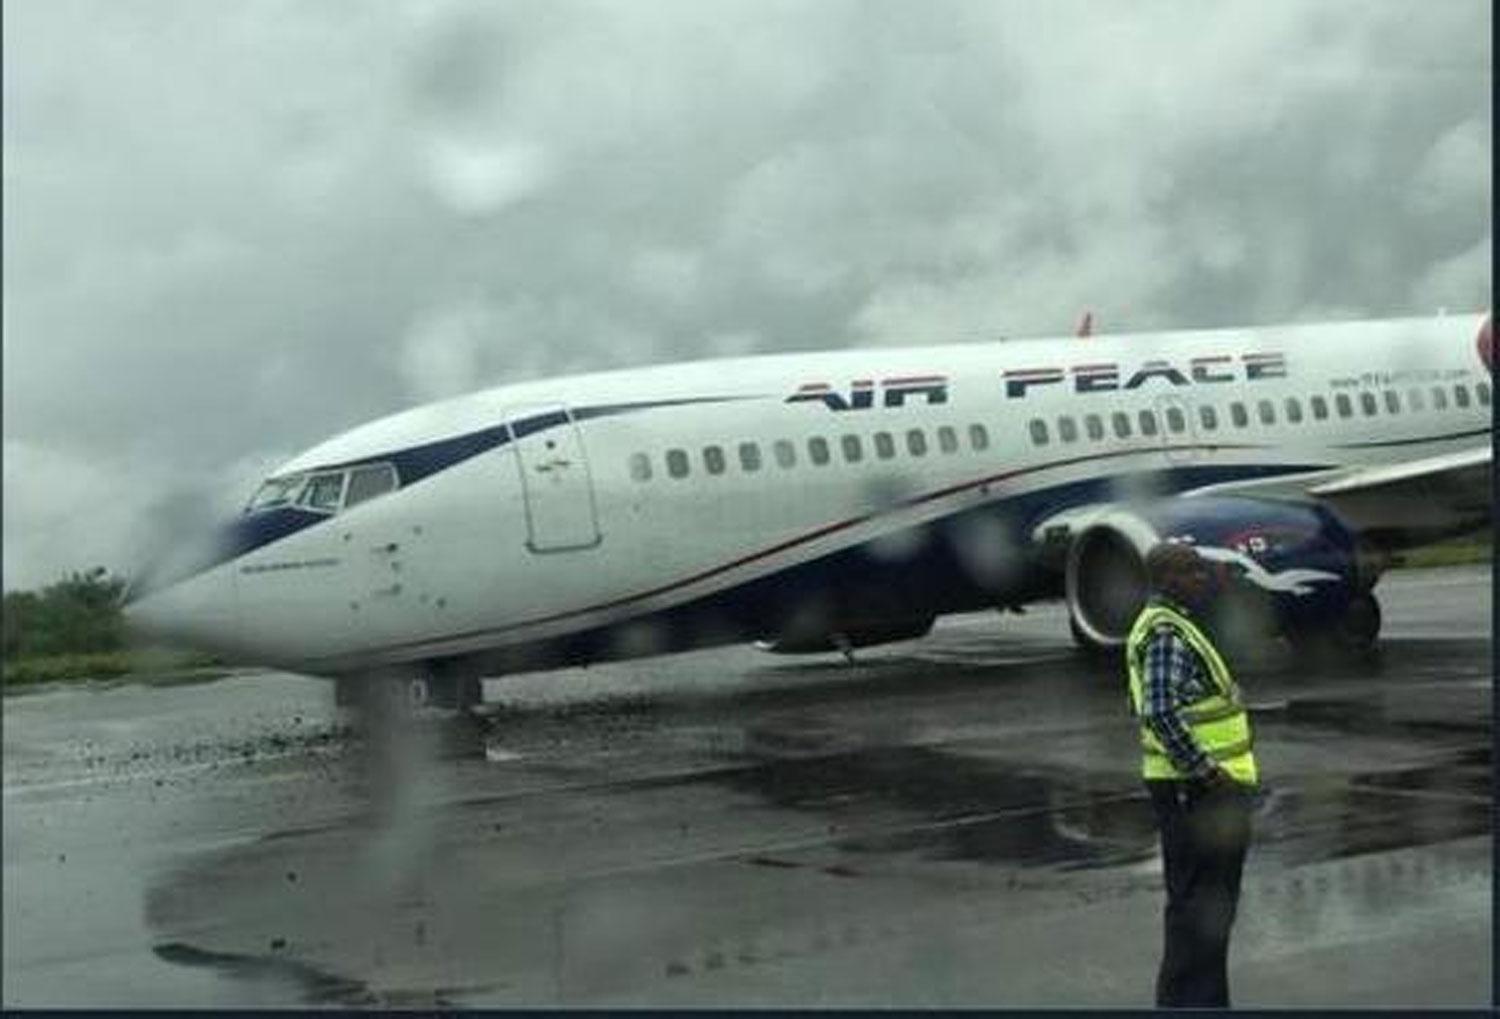 Air-Peace plane crash-lands in Lagos